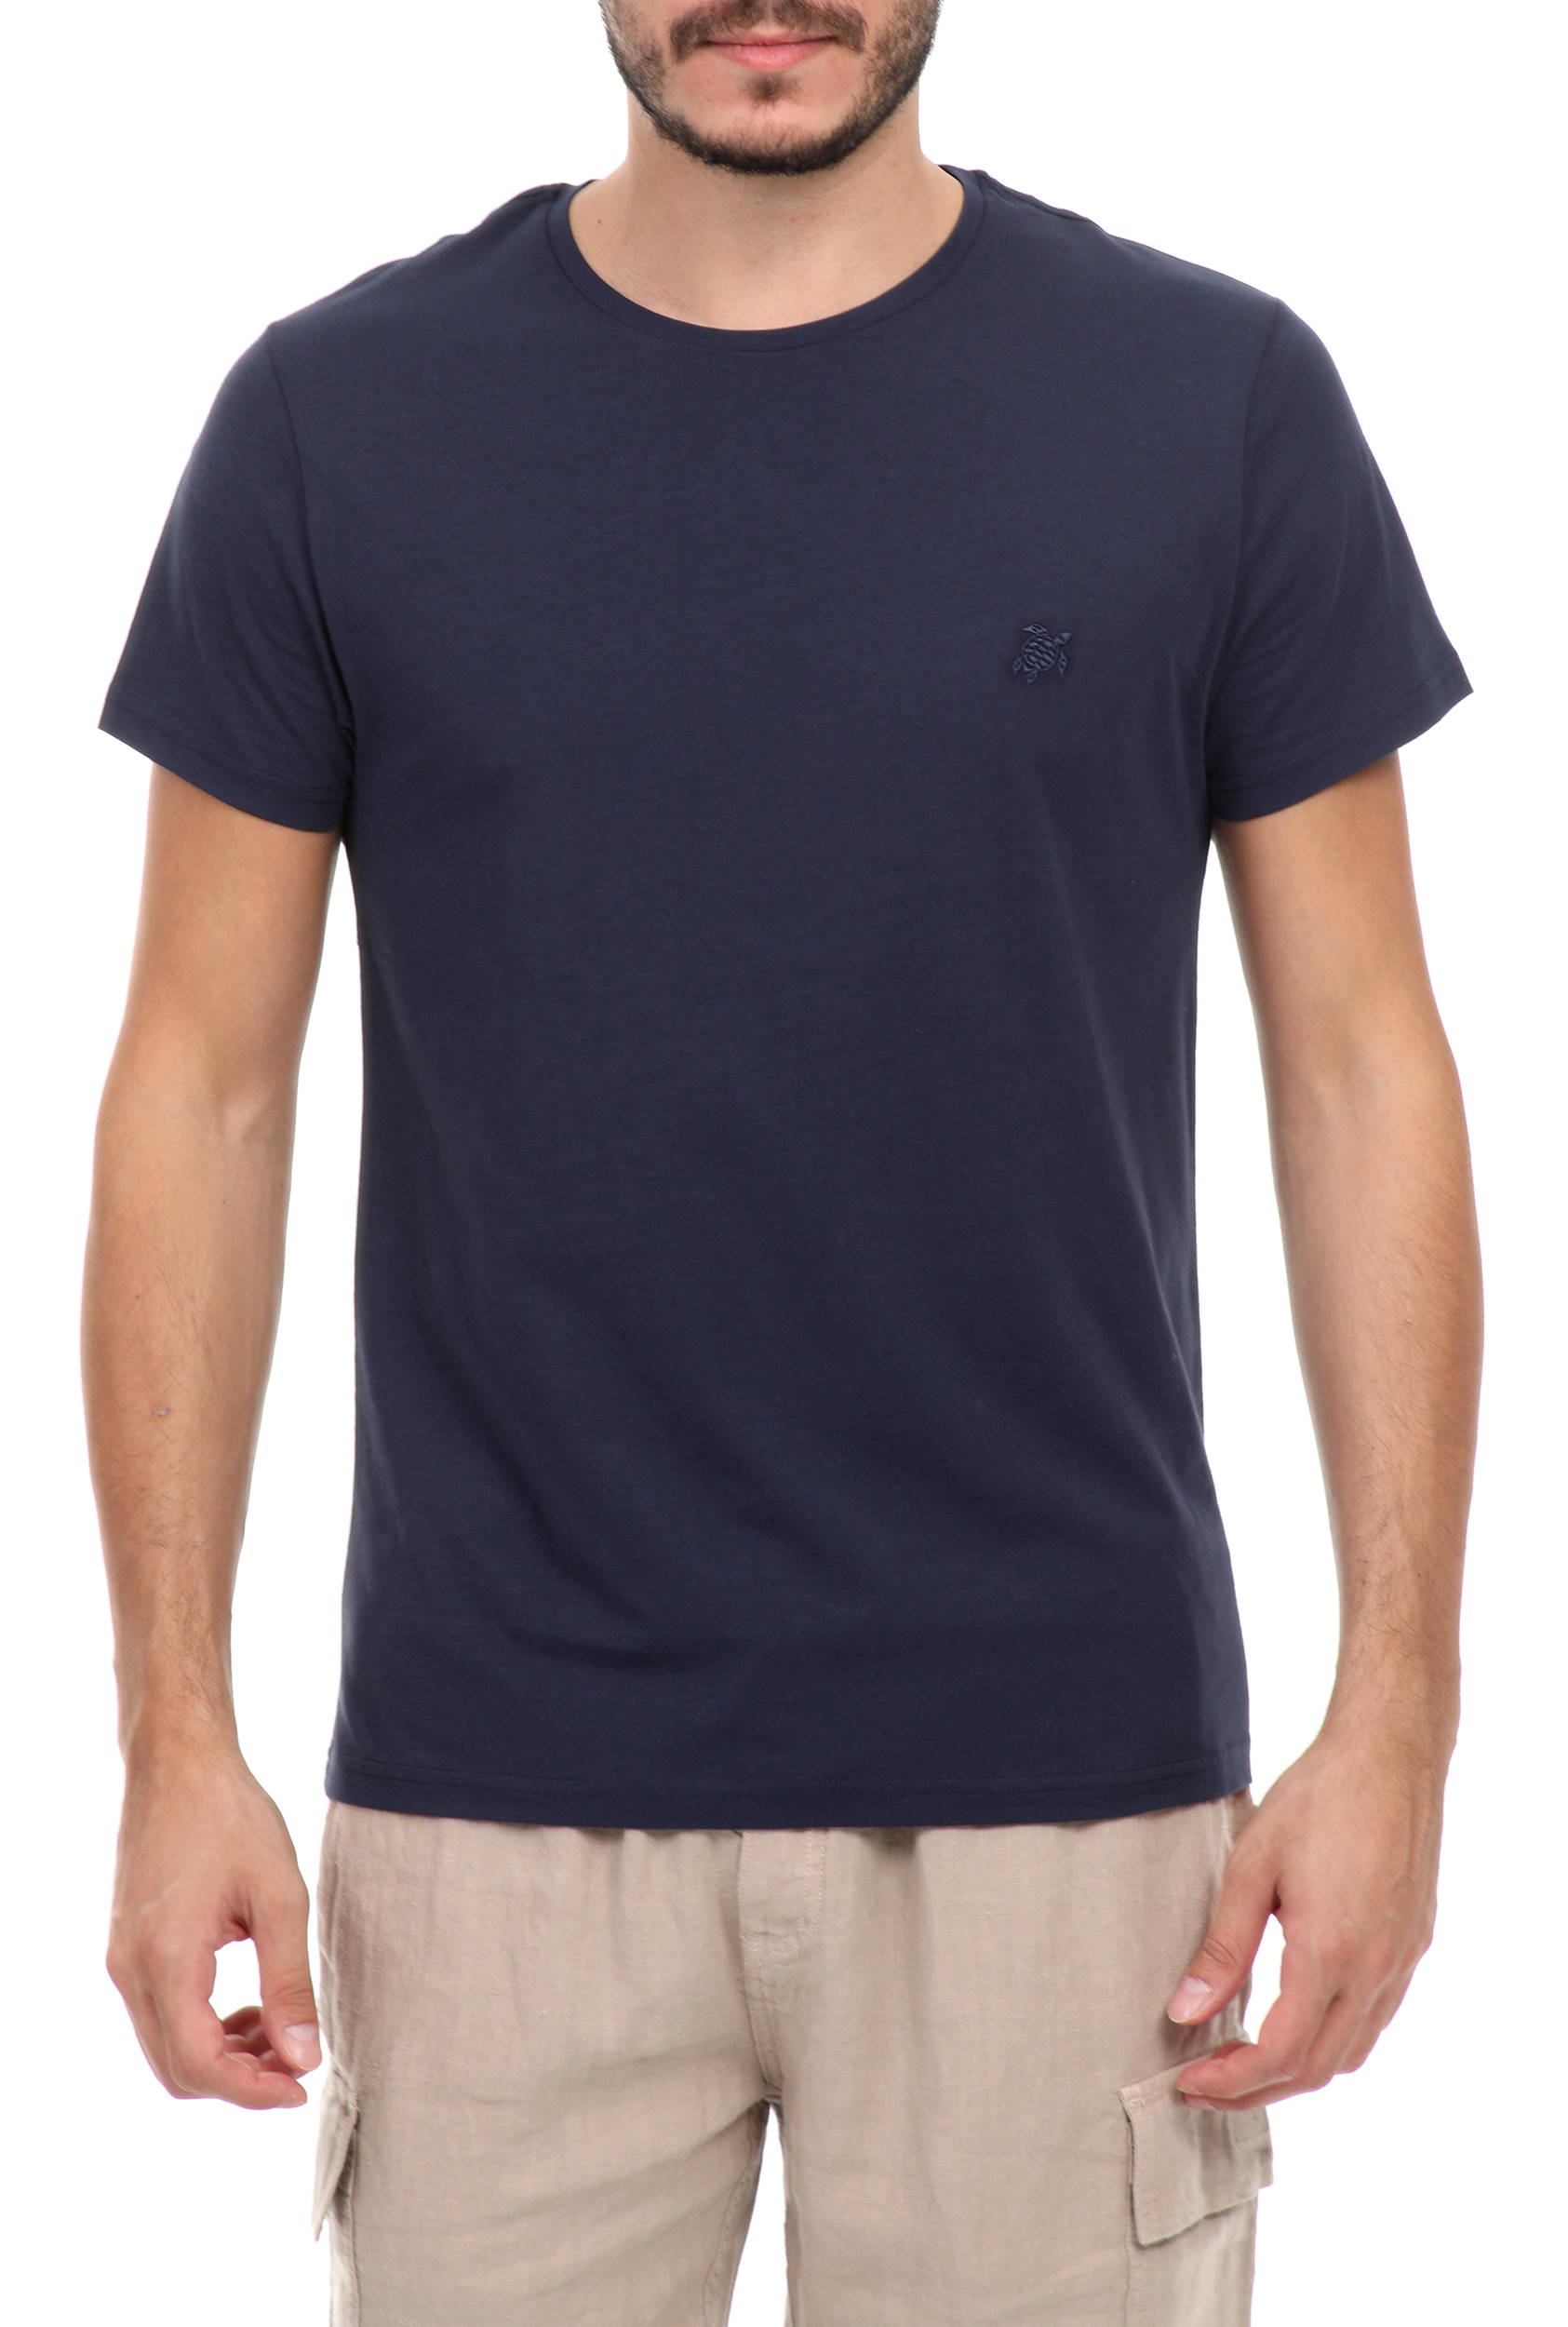 Ανδρικά/Ρούχα/Μπλούζες/Κοντομάνικες VILEBREQUIN - Ανδρικό t-shirt VILEBREQUIN TAO μπλε